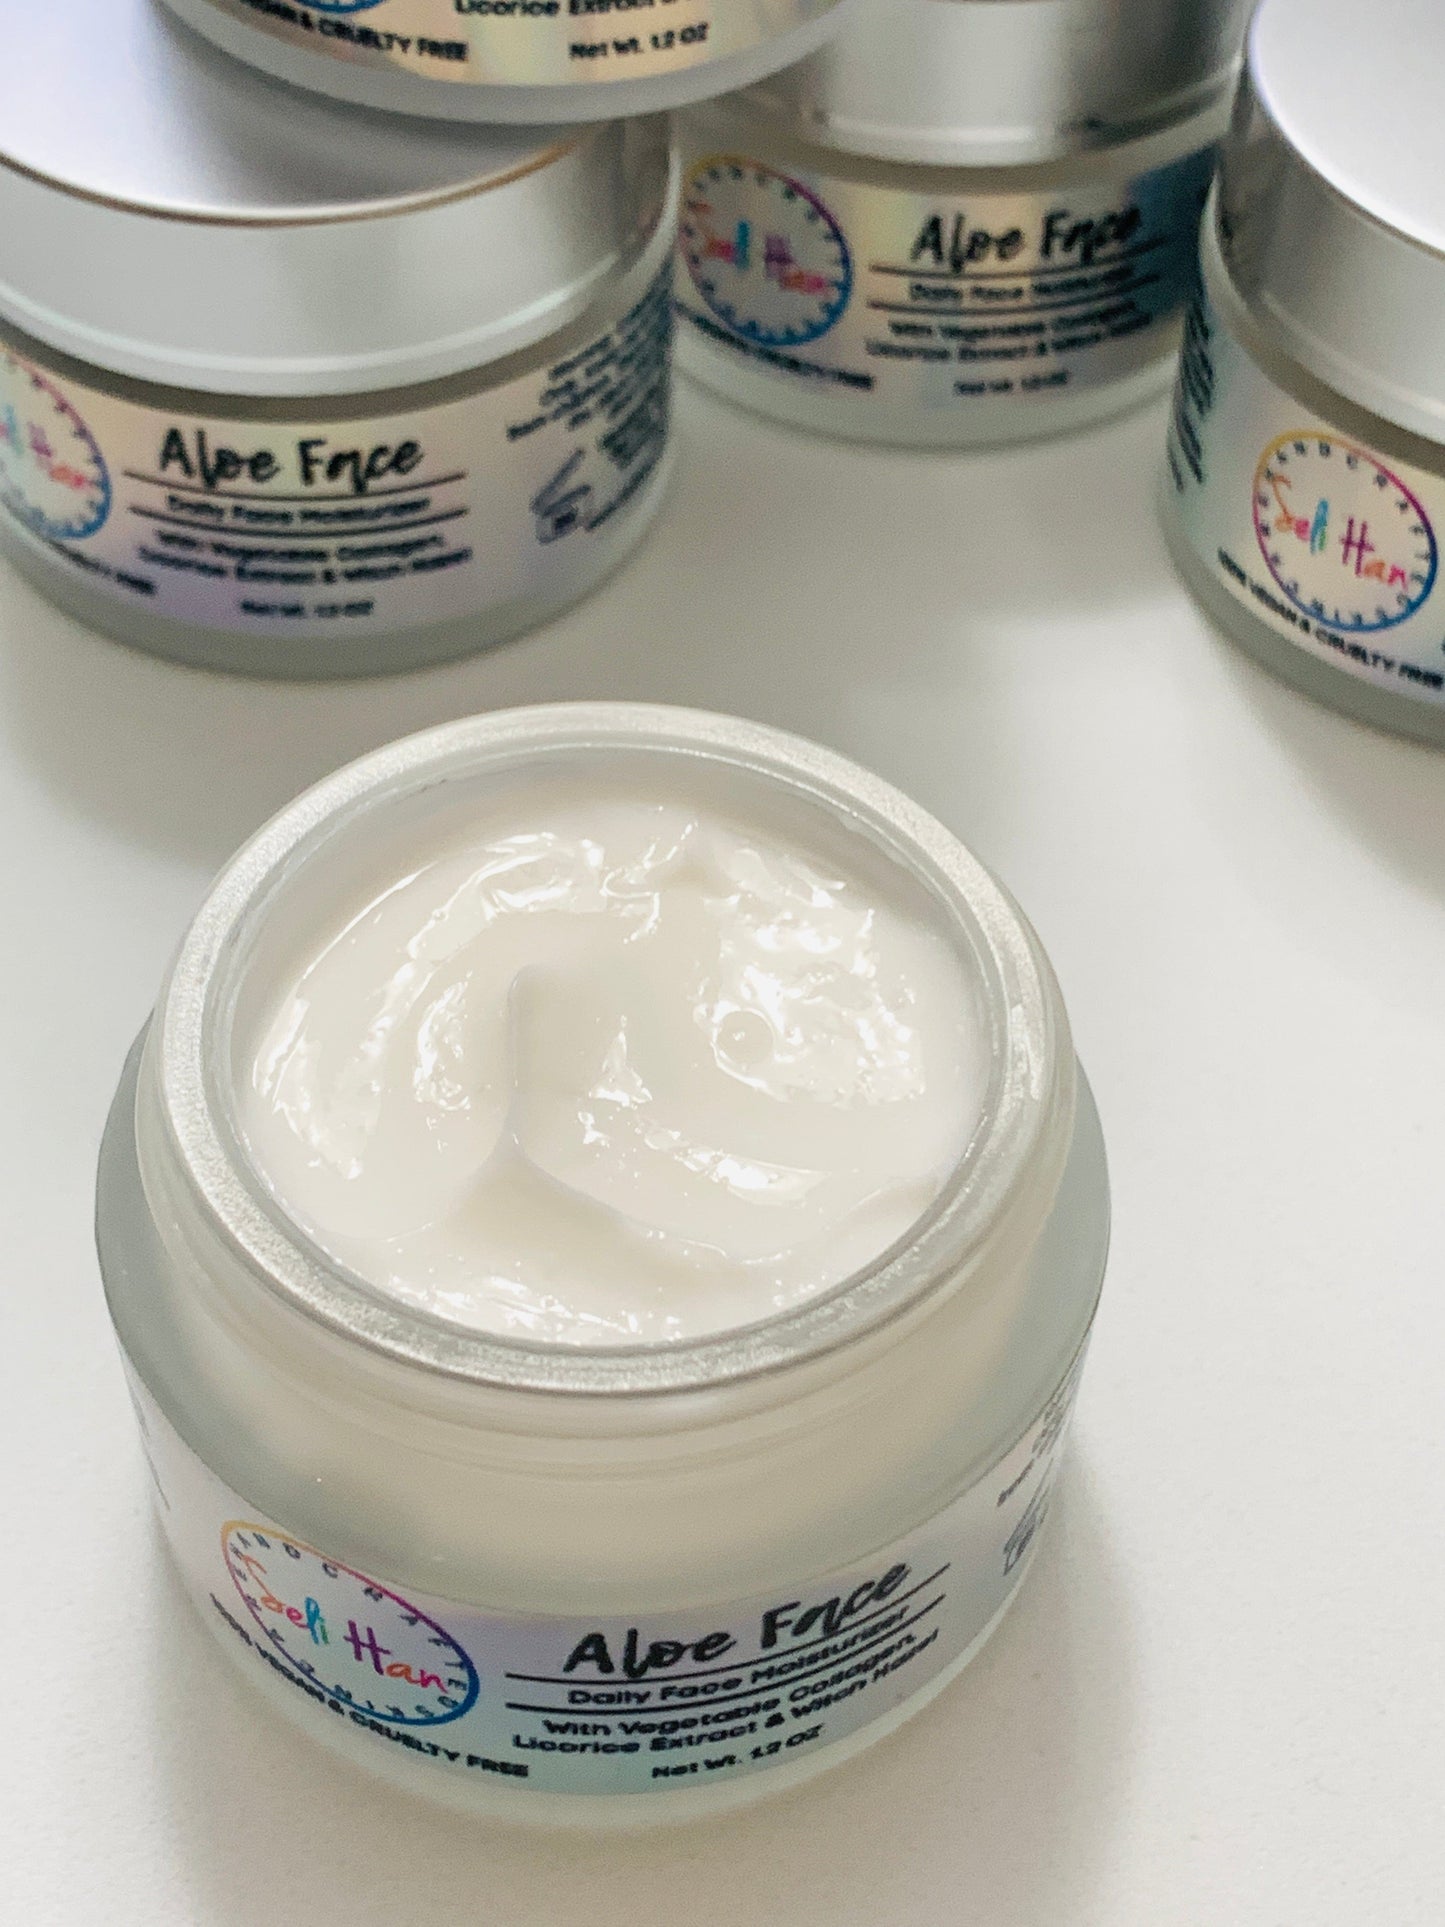 Aloe Vera Daily Face Cream - Seli Han Skincare 